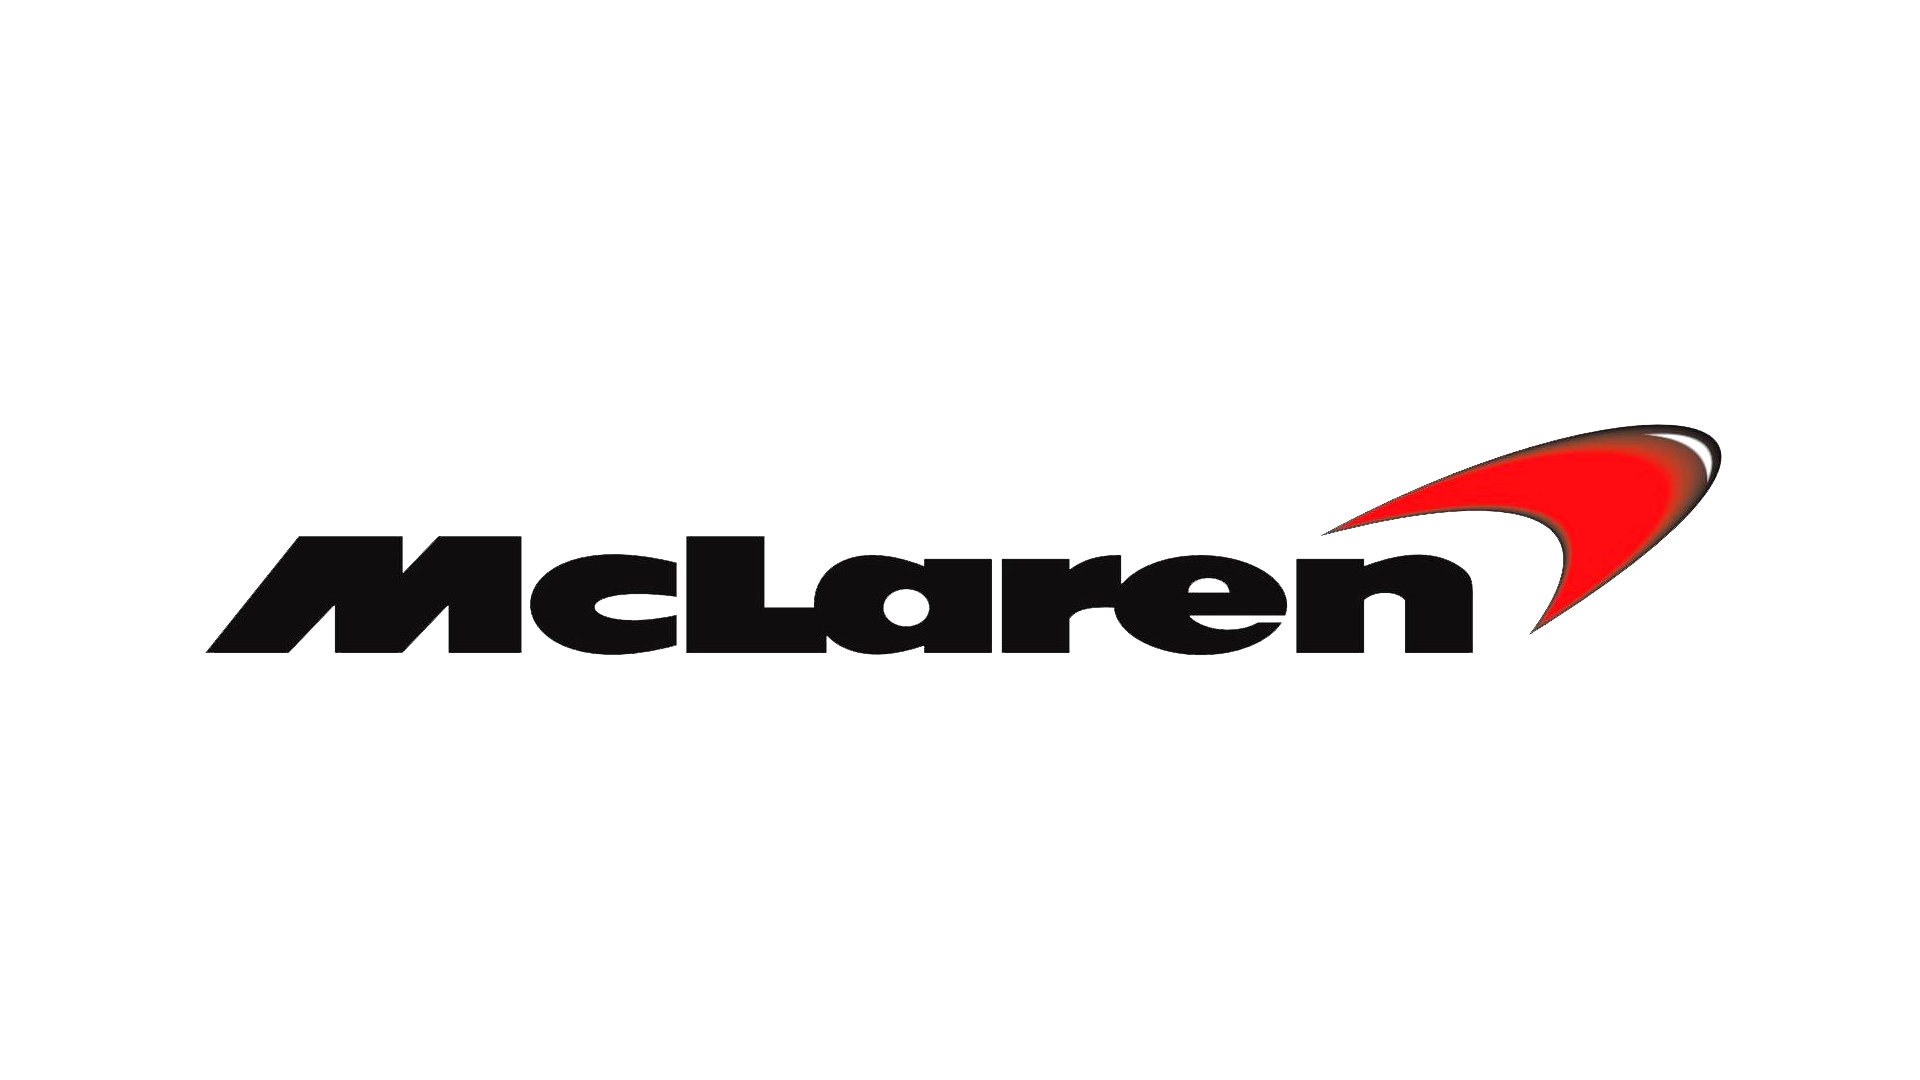 McLaren-logo-1997-1920x1080.png